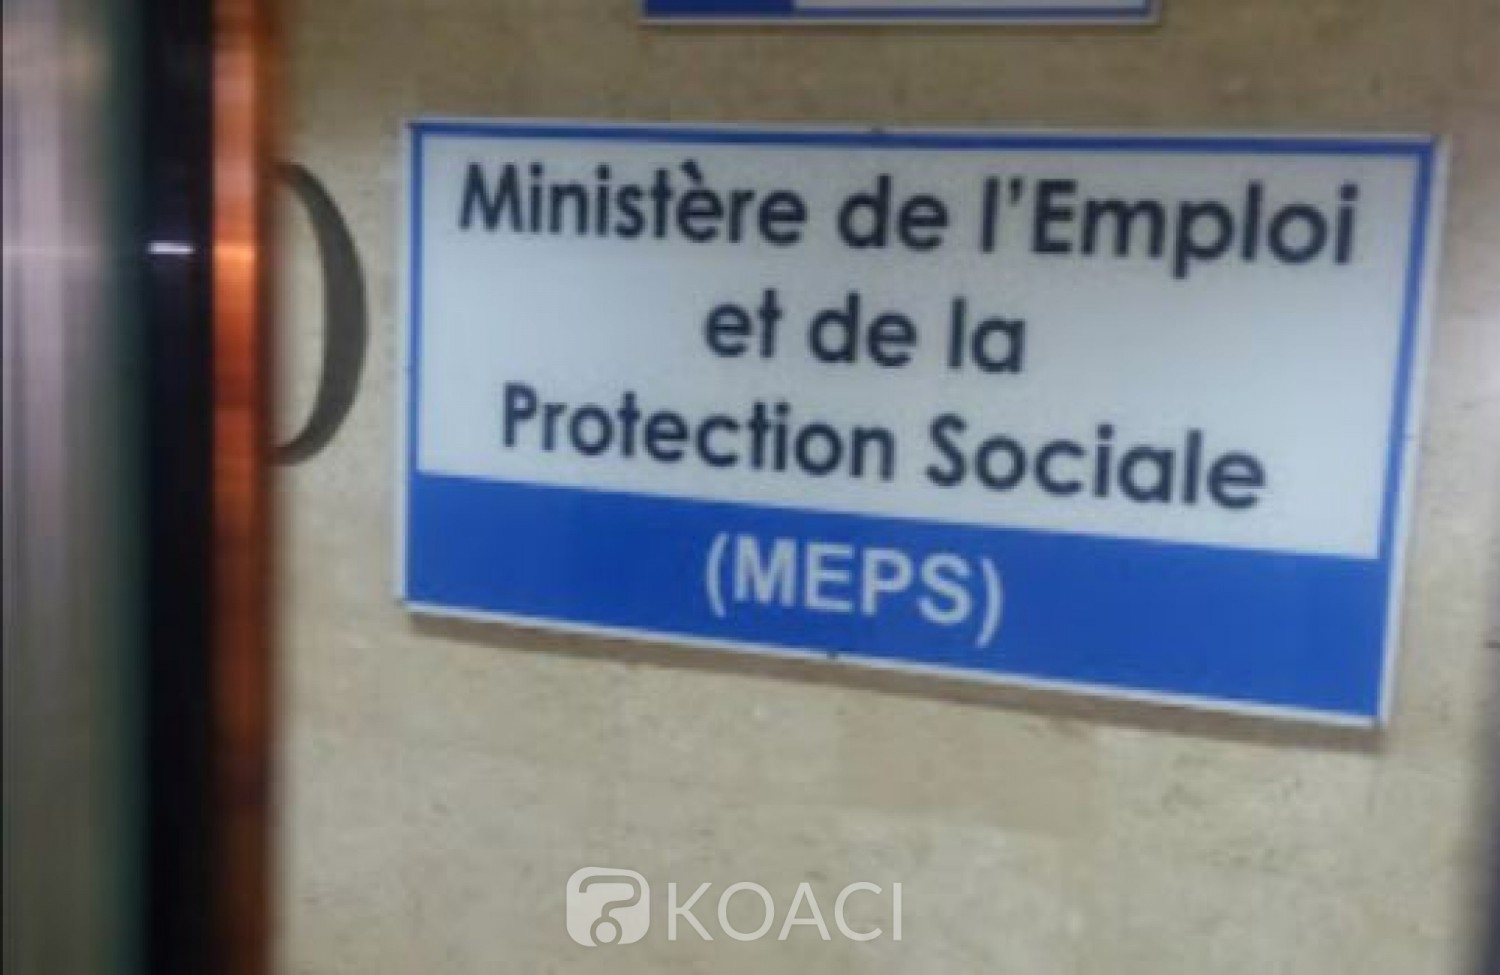 Côte d'Ivoire:  Non application du décret sur le travail temporaire, un Collectif de travailleurs interpellent le ministère de l'Emploi et de la protection sociale